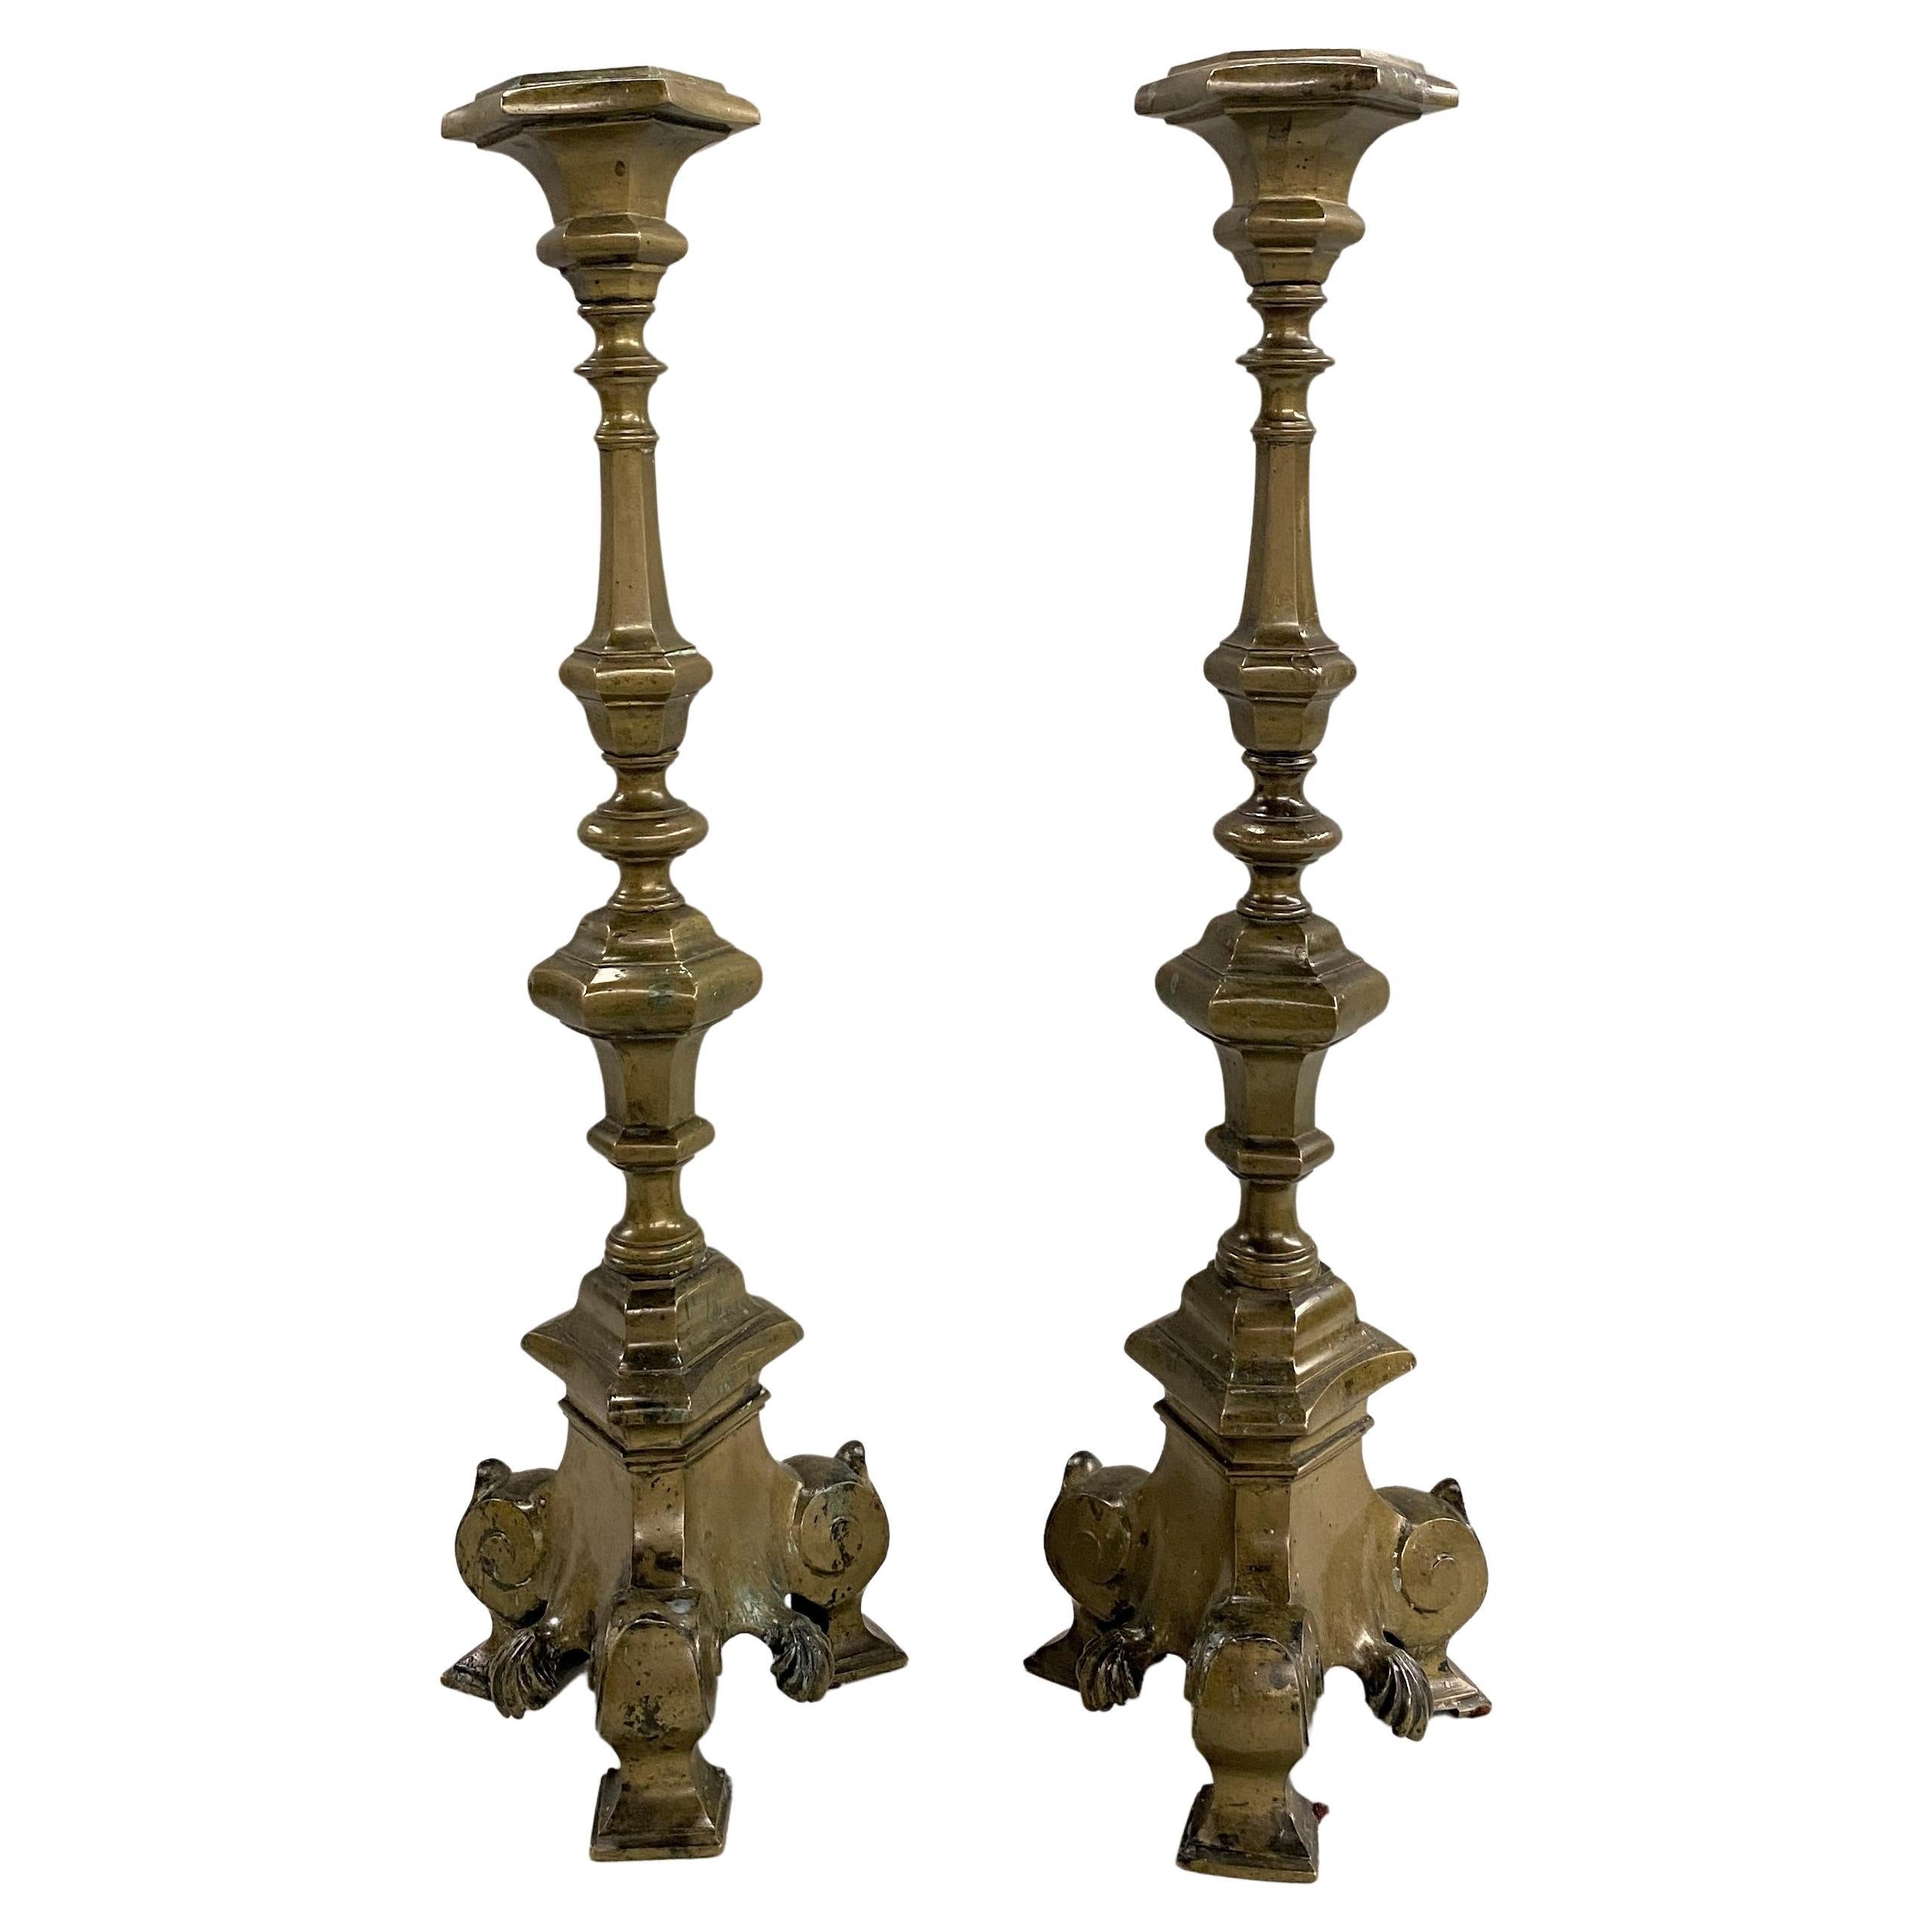 Paire de chandeliers en bronze patiné de style baroque du XVIIIe siècle